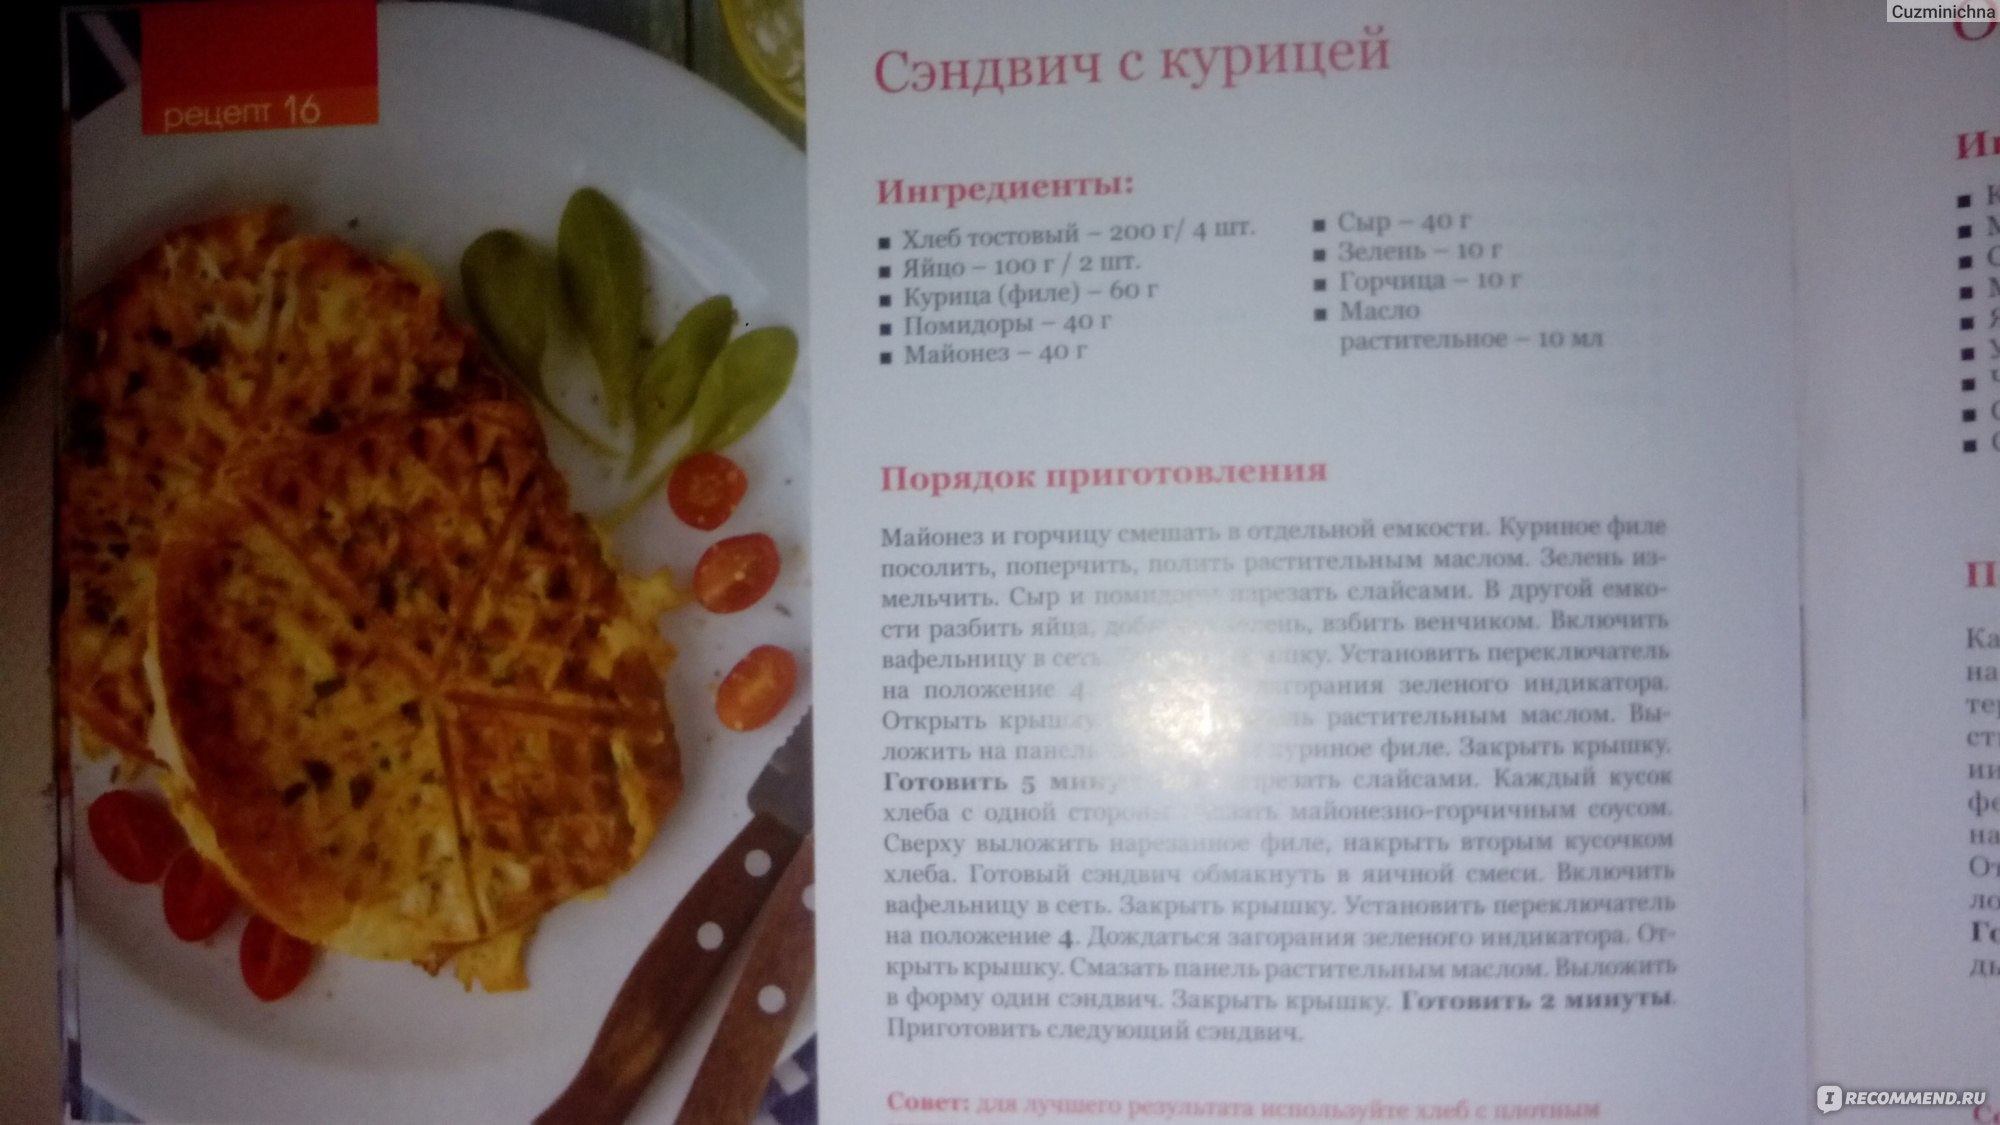 Венские вафли рецепт для электровафельницы пошагово с фото